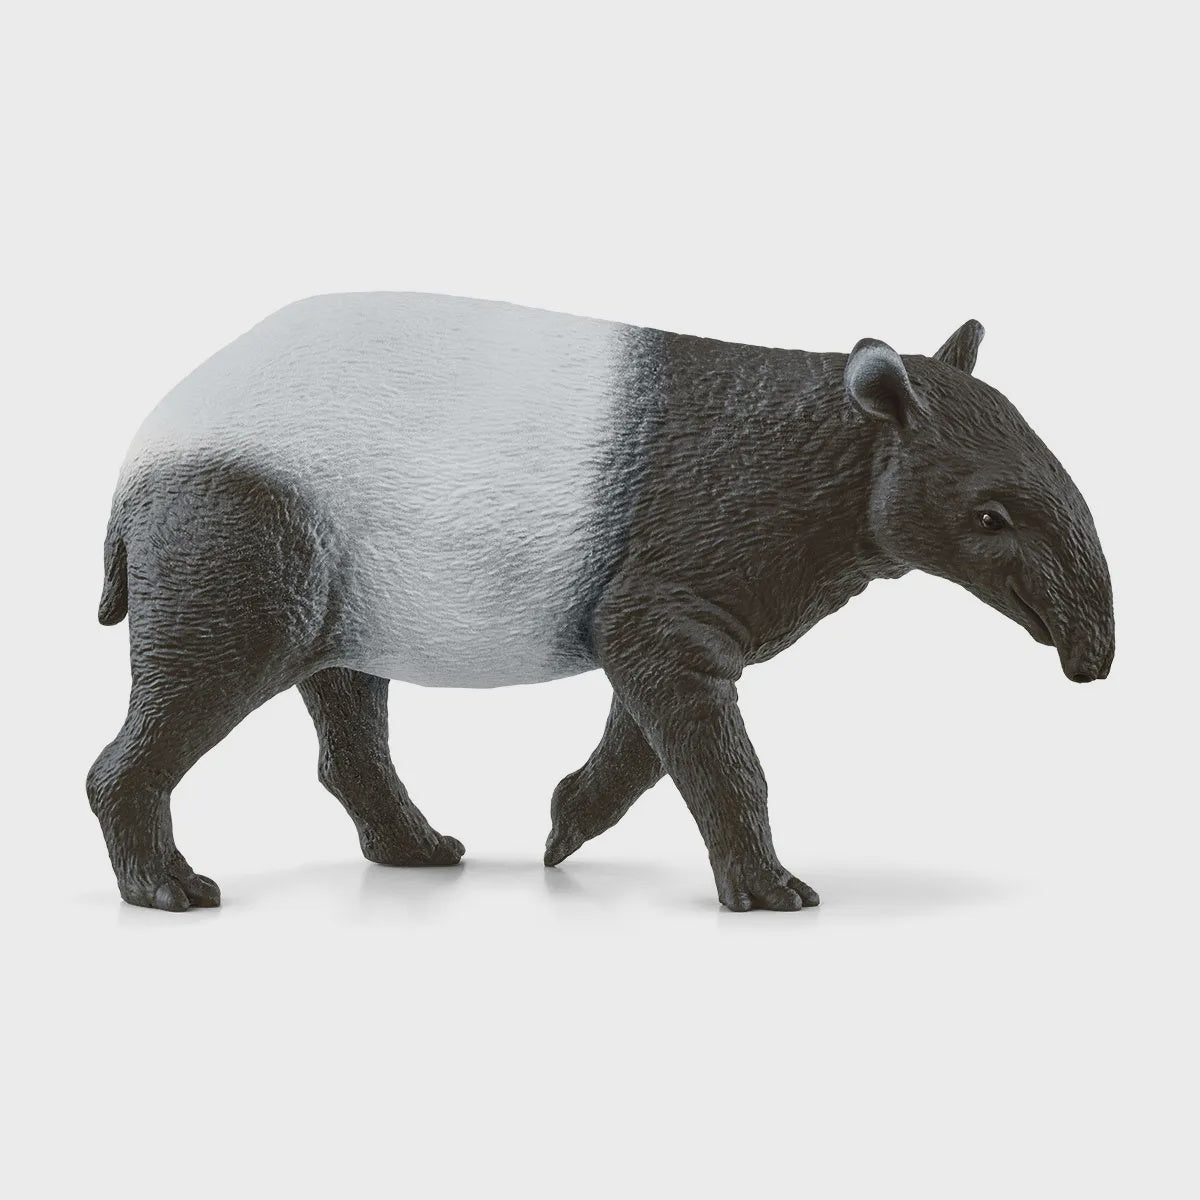 Schleich - Tapir